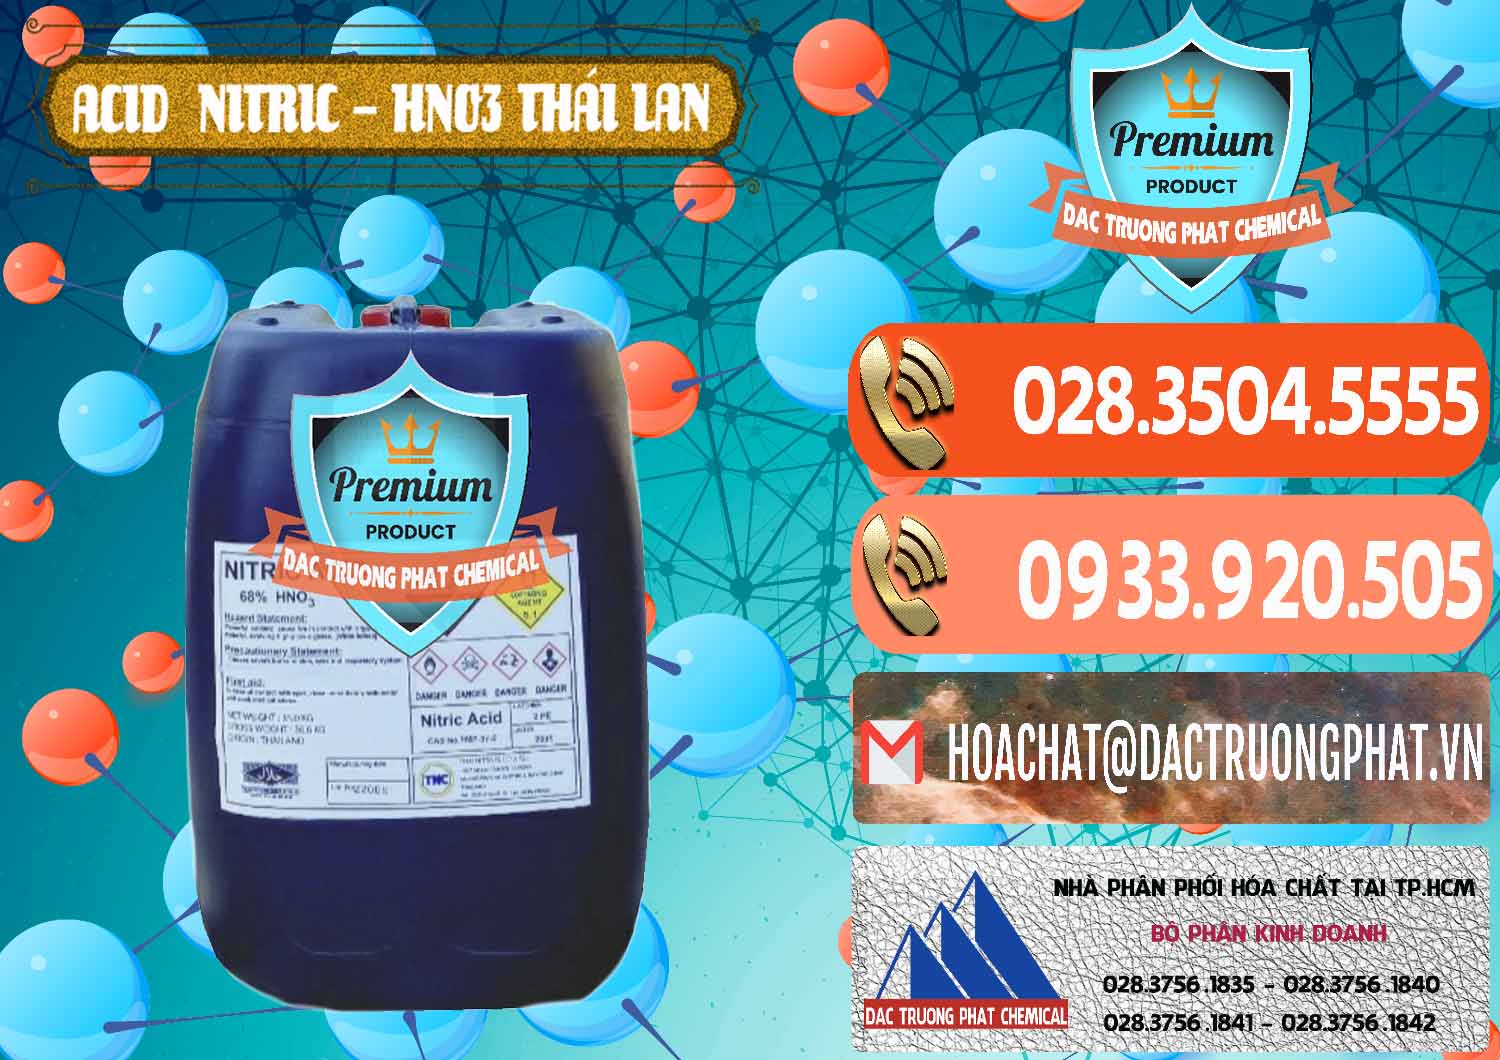 Chuyên cung ứng và bán Acid Nitric – Axit Nitric HNO3 Thái Lan Thailand - 0344 - Công ty chuyên phân phối & cung ứng hóa chất tại TP.HCM - hoachatmientay.com